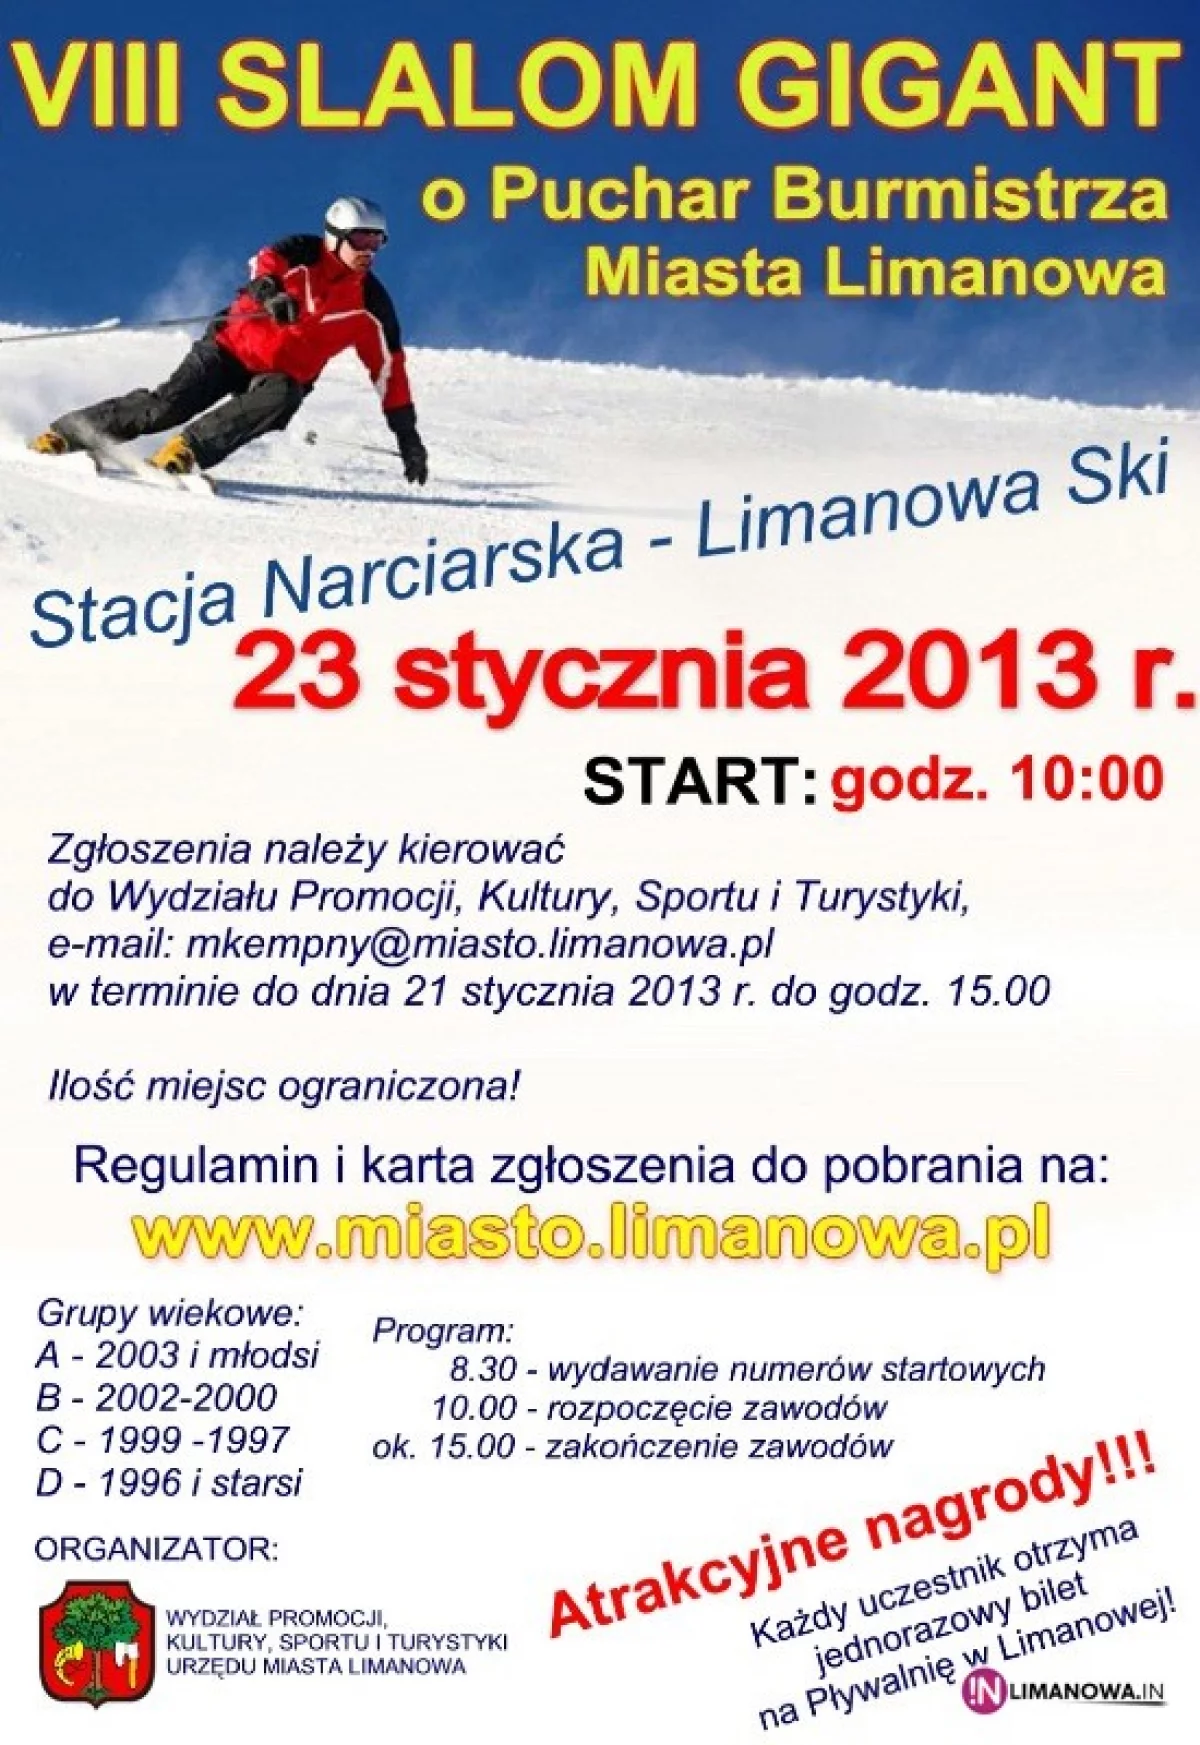 VIII Slalom Gigant o Puchar Burmistrza Miasta Limanowa